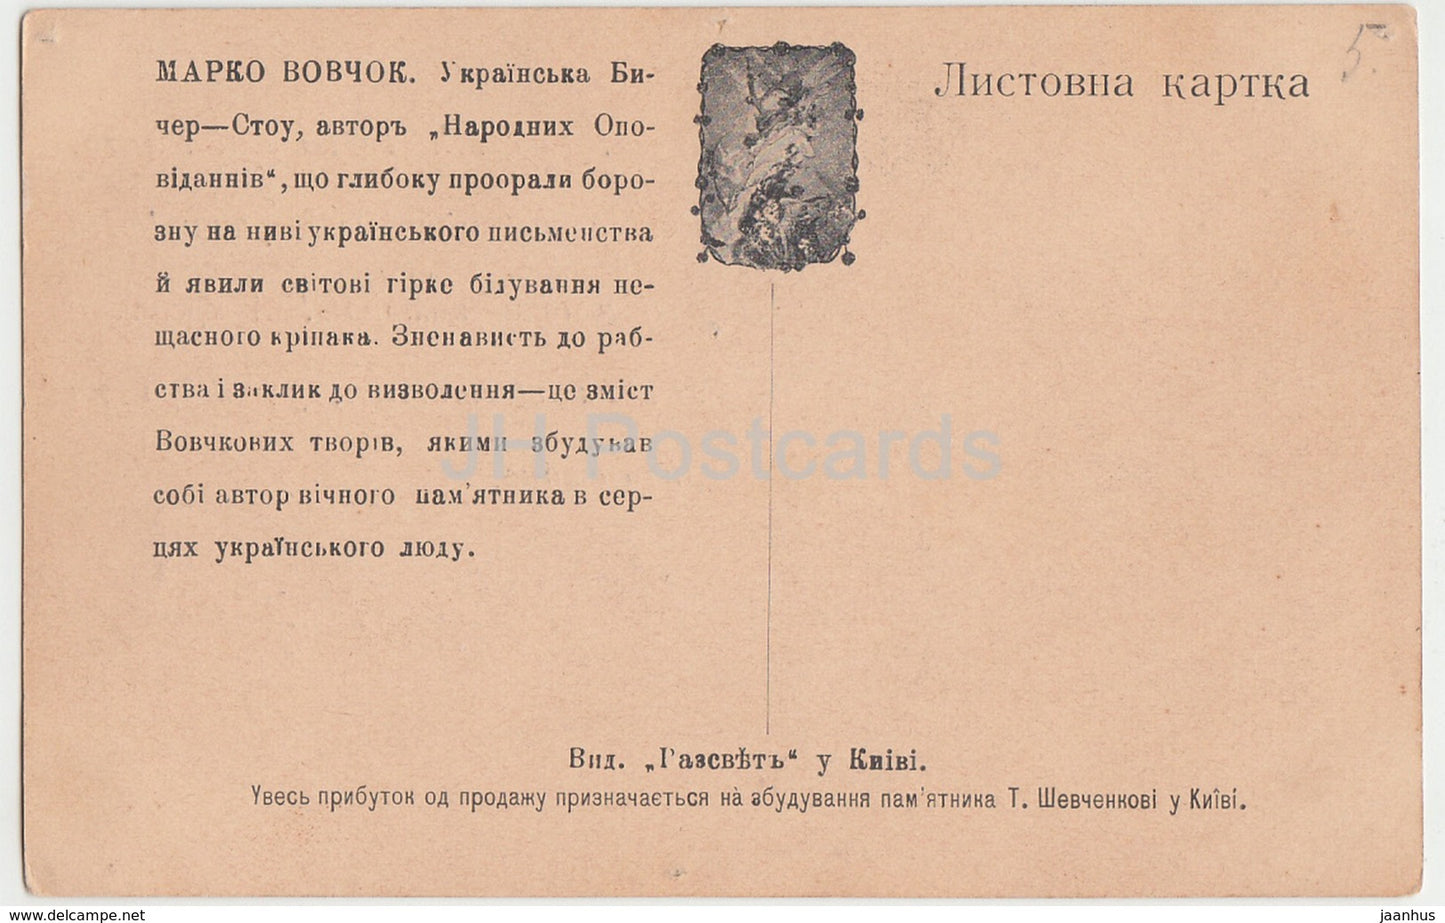 Célèbre écrivain ukrainien Marko Vovchok - Ukraine - carte postale ancienne - Russie impériale - inutilisée